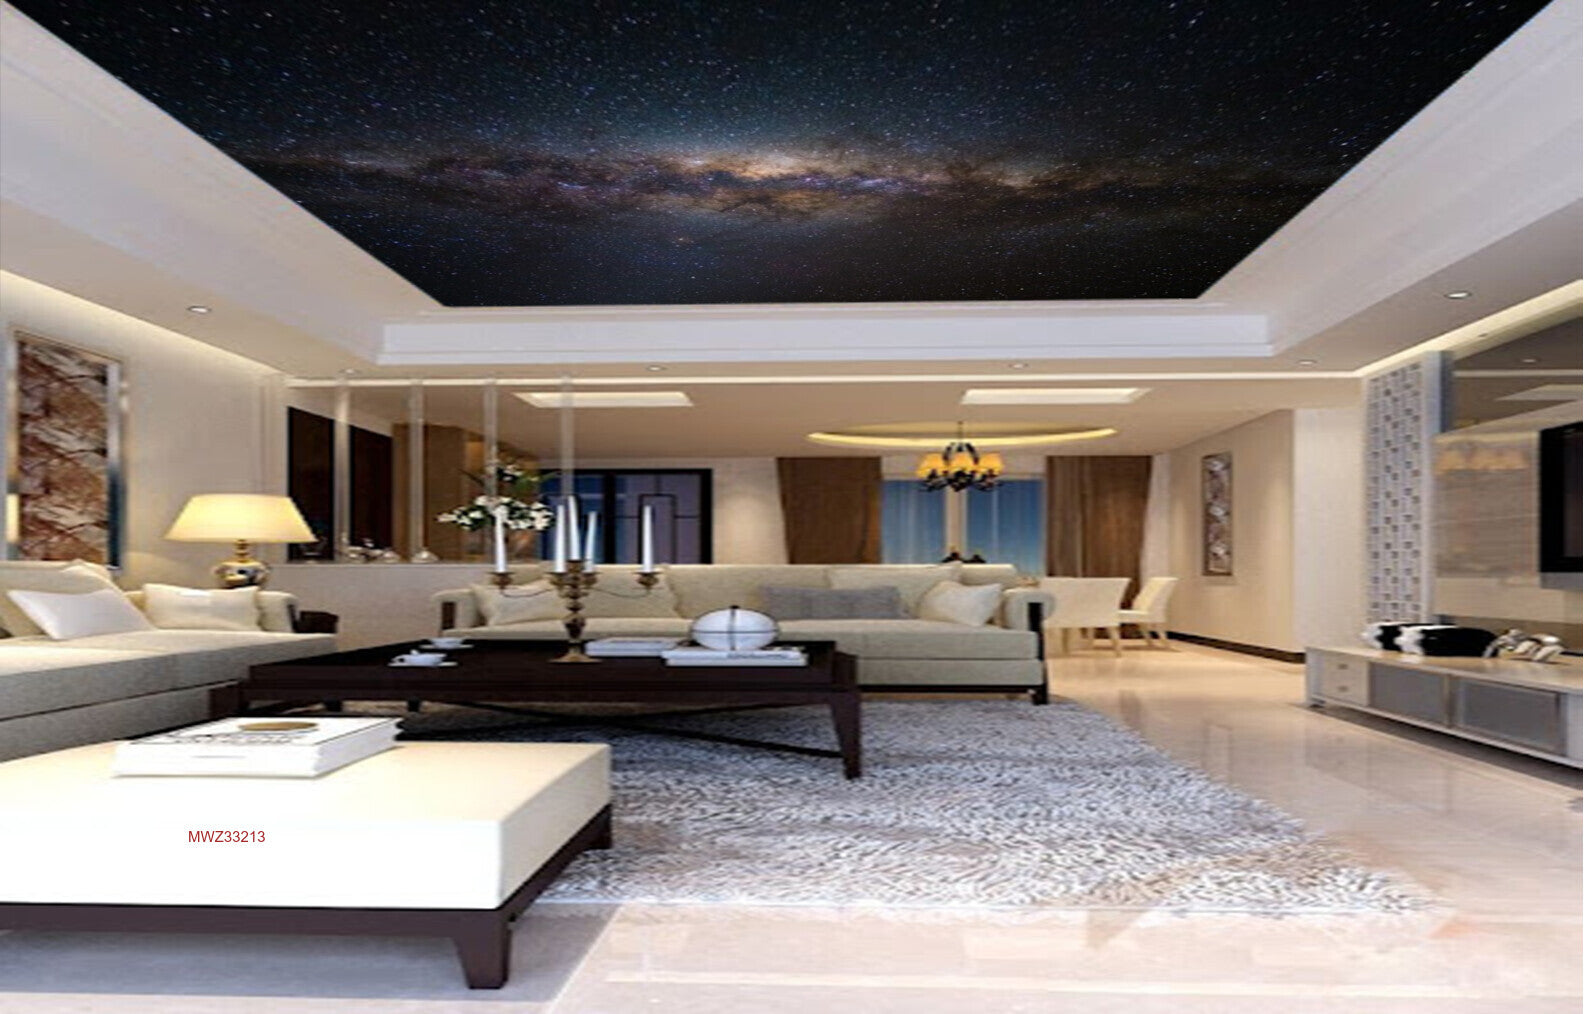 Avikalp MWZ3321 Galaxy Stars Sky HD Wallpaper for Ceiling